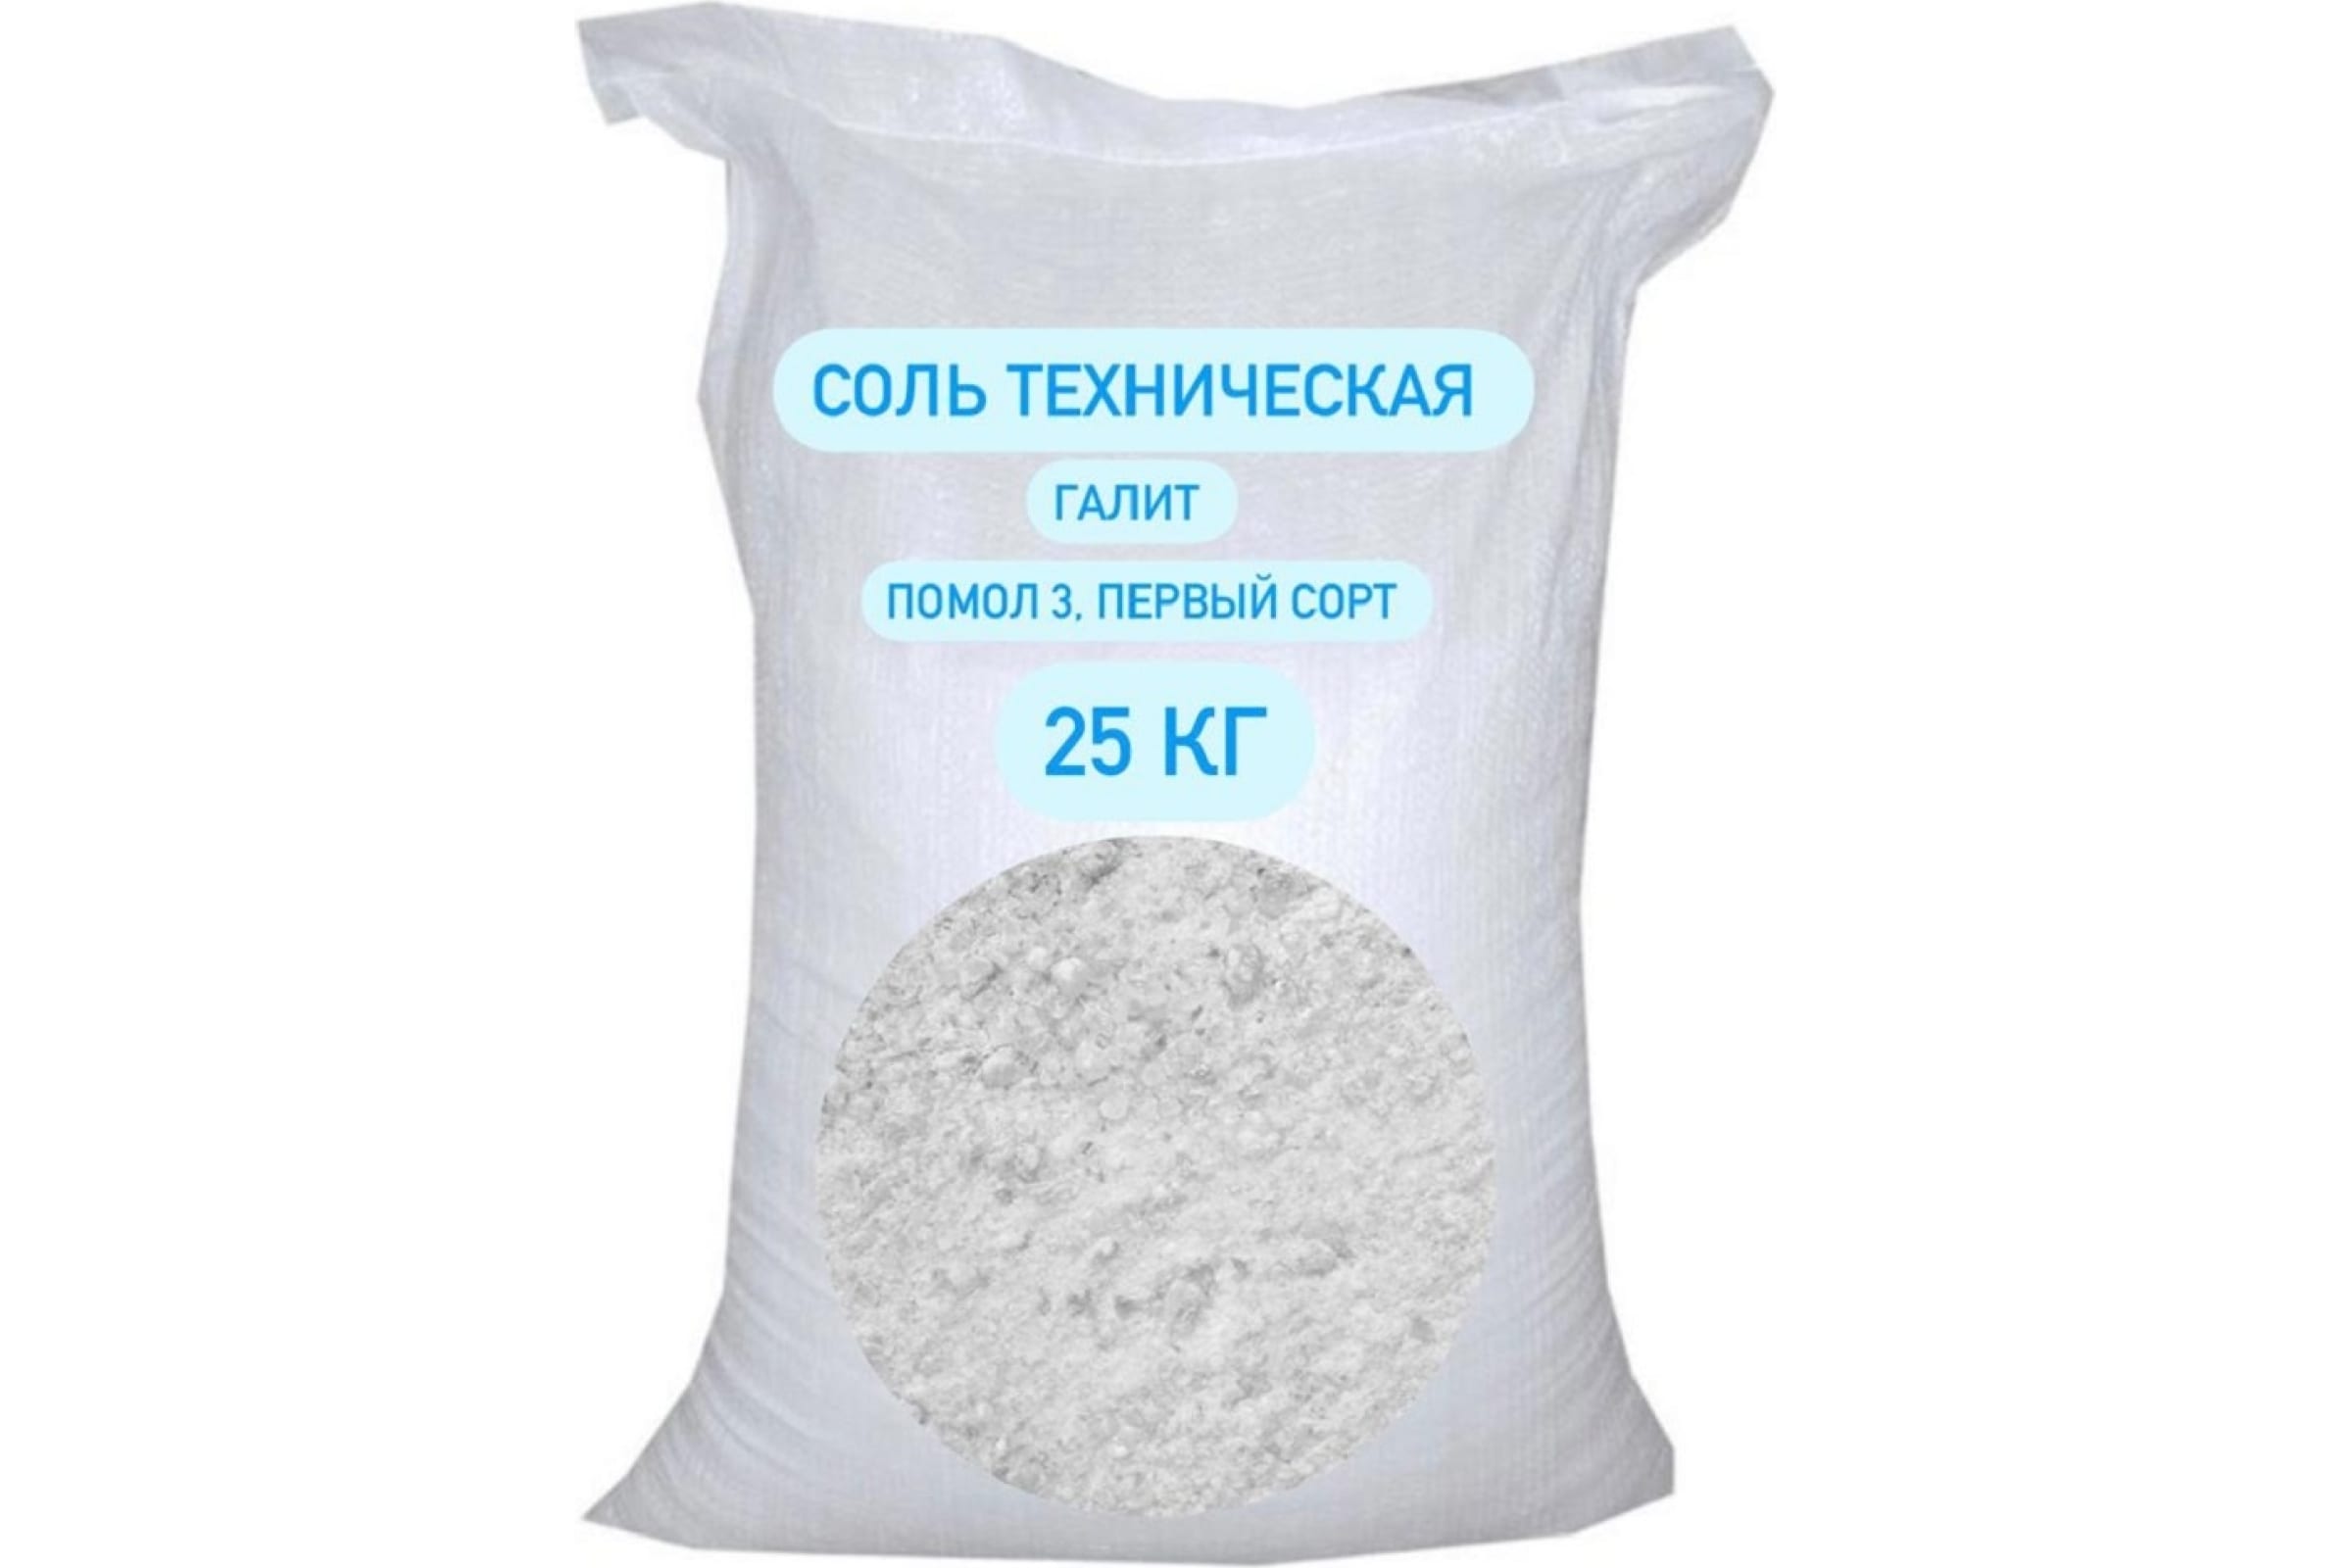 Противогололедный реагент СТД ПетроСтрой Соль техническая галит -15, песок 25 кг